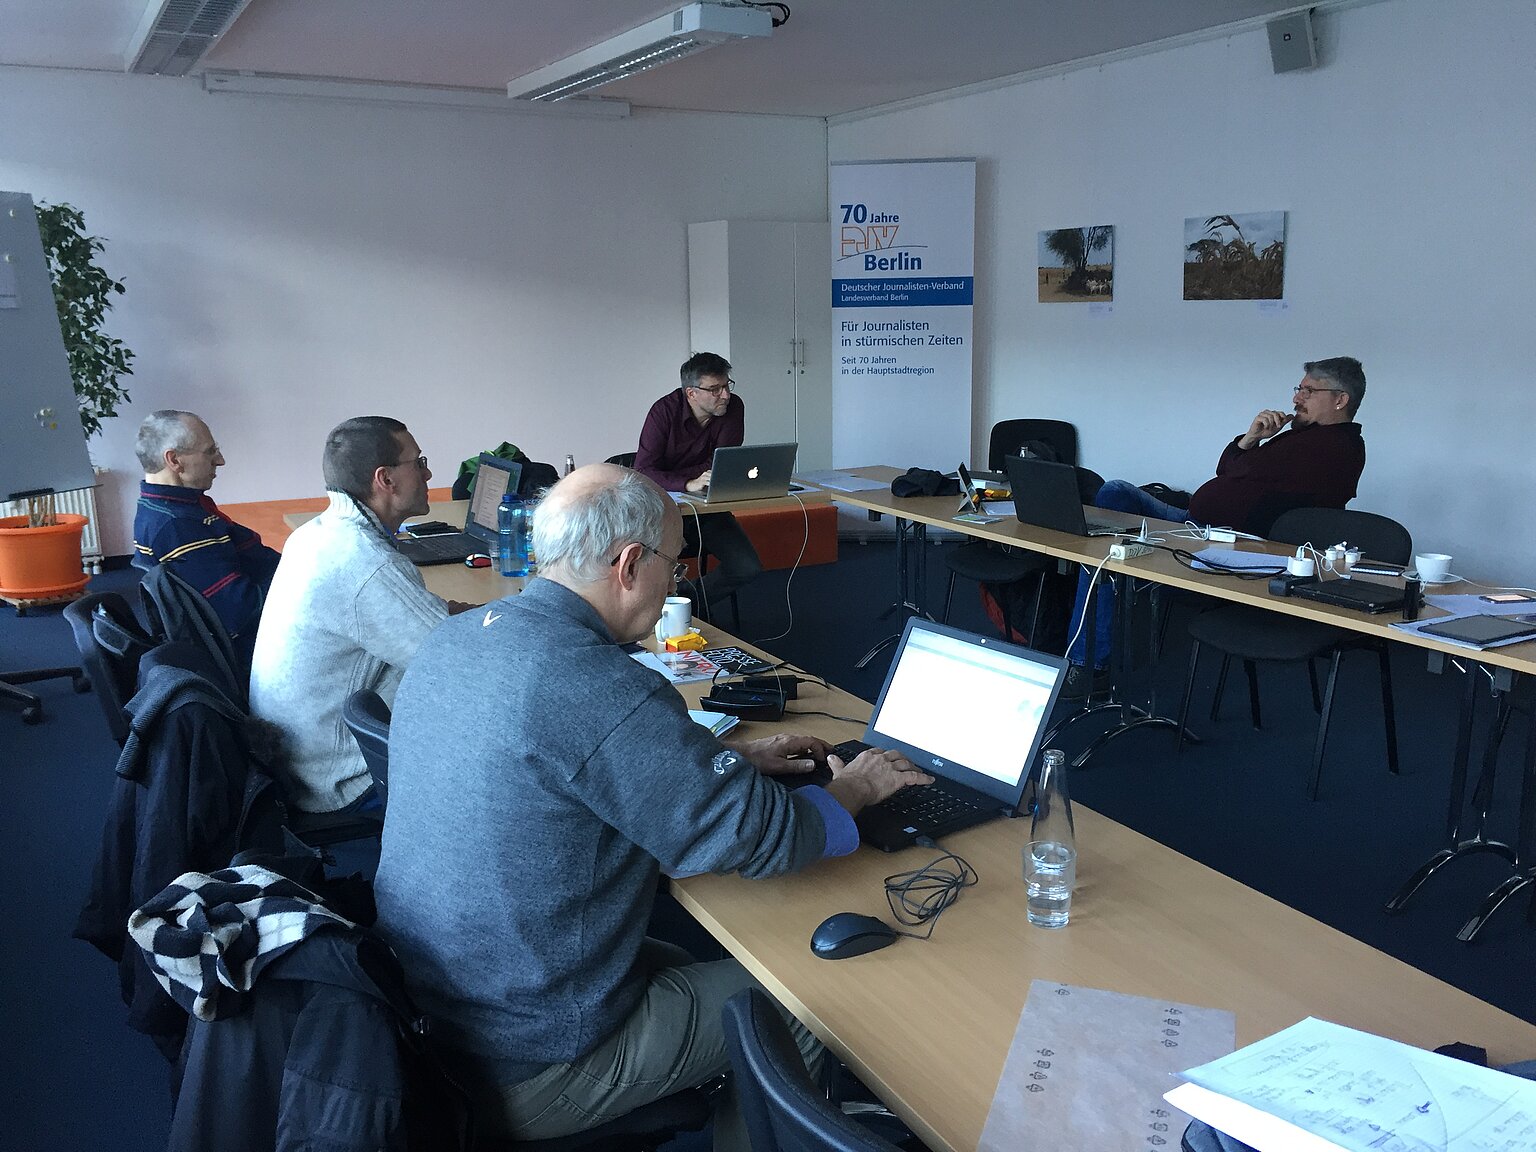 Das Foto zeigt eine Sitzung des Fachausschusses für Bildjournalismus im DJV. – Intensive Diskussion unter Einbindung von Skype. Foto: Michael Hirschler